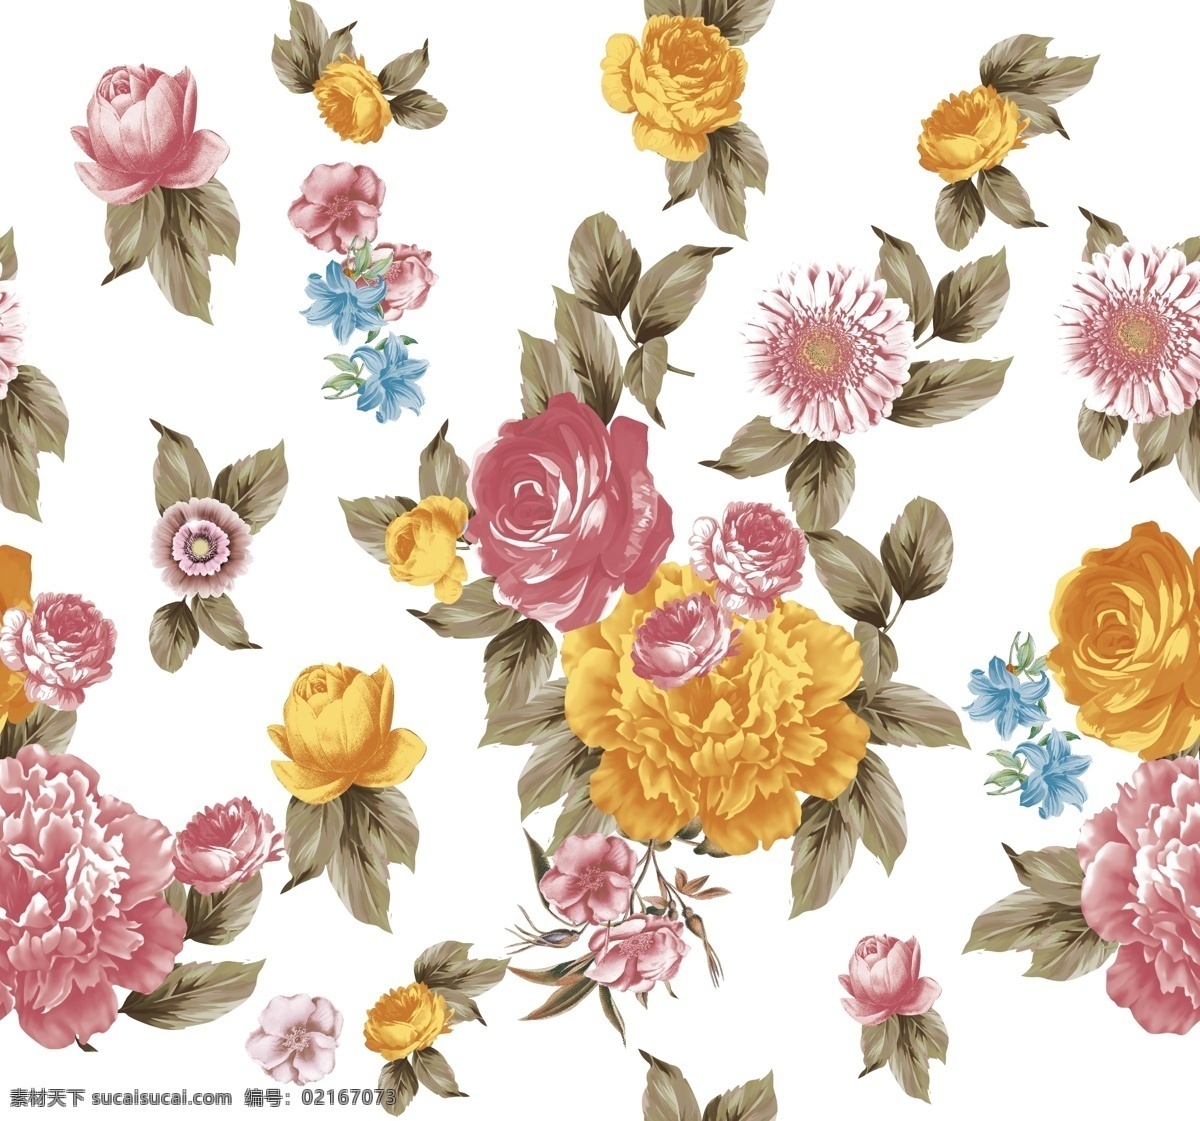 大牌图片 玫瑰花 手绘花 大牌花型 小碎花 牡丹花 环境设计 效果图